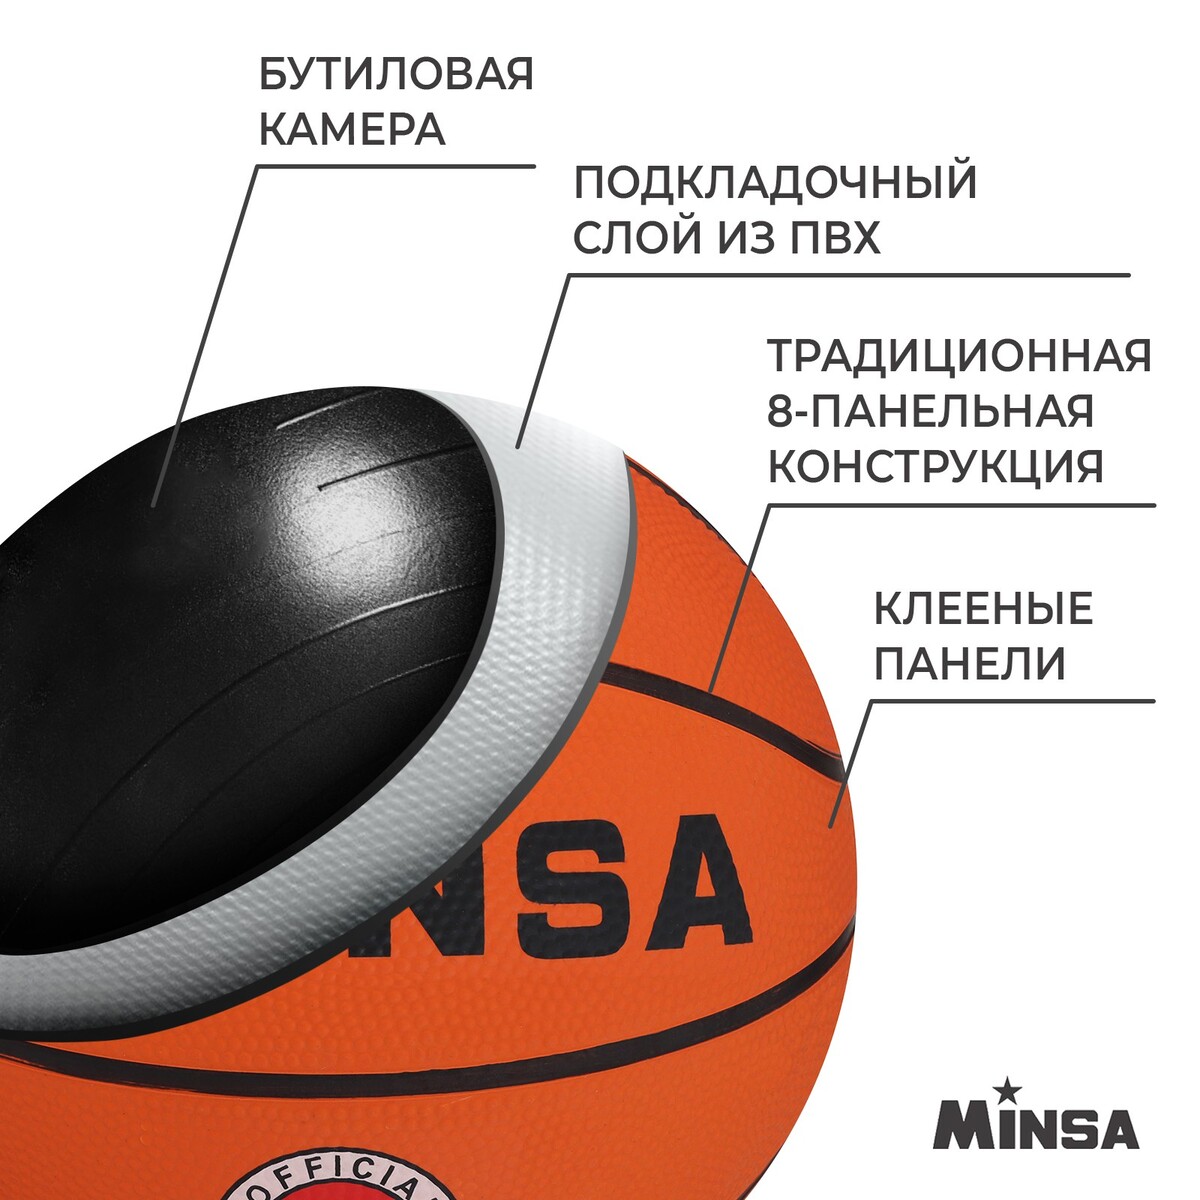 фото Мяч баскетбольный minsa sport, пвх, клееный, 8 панелей, р. 5